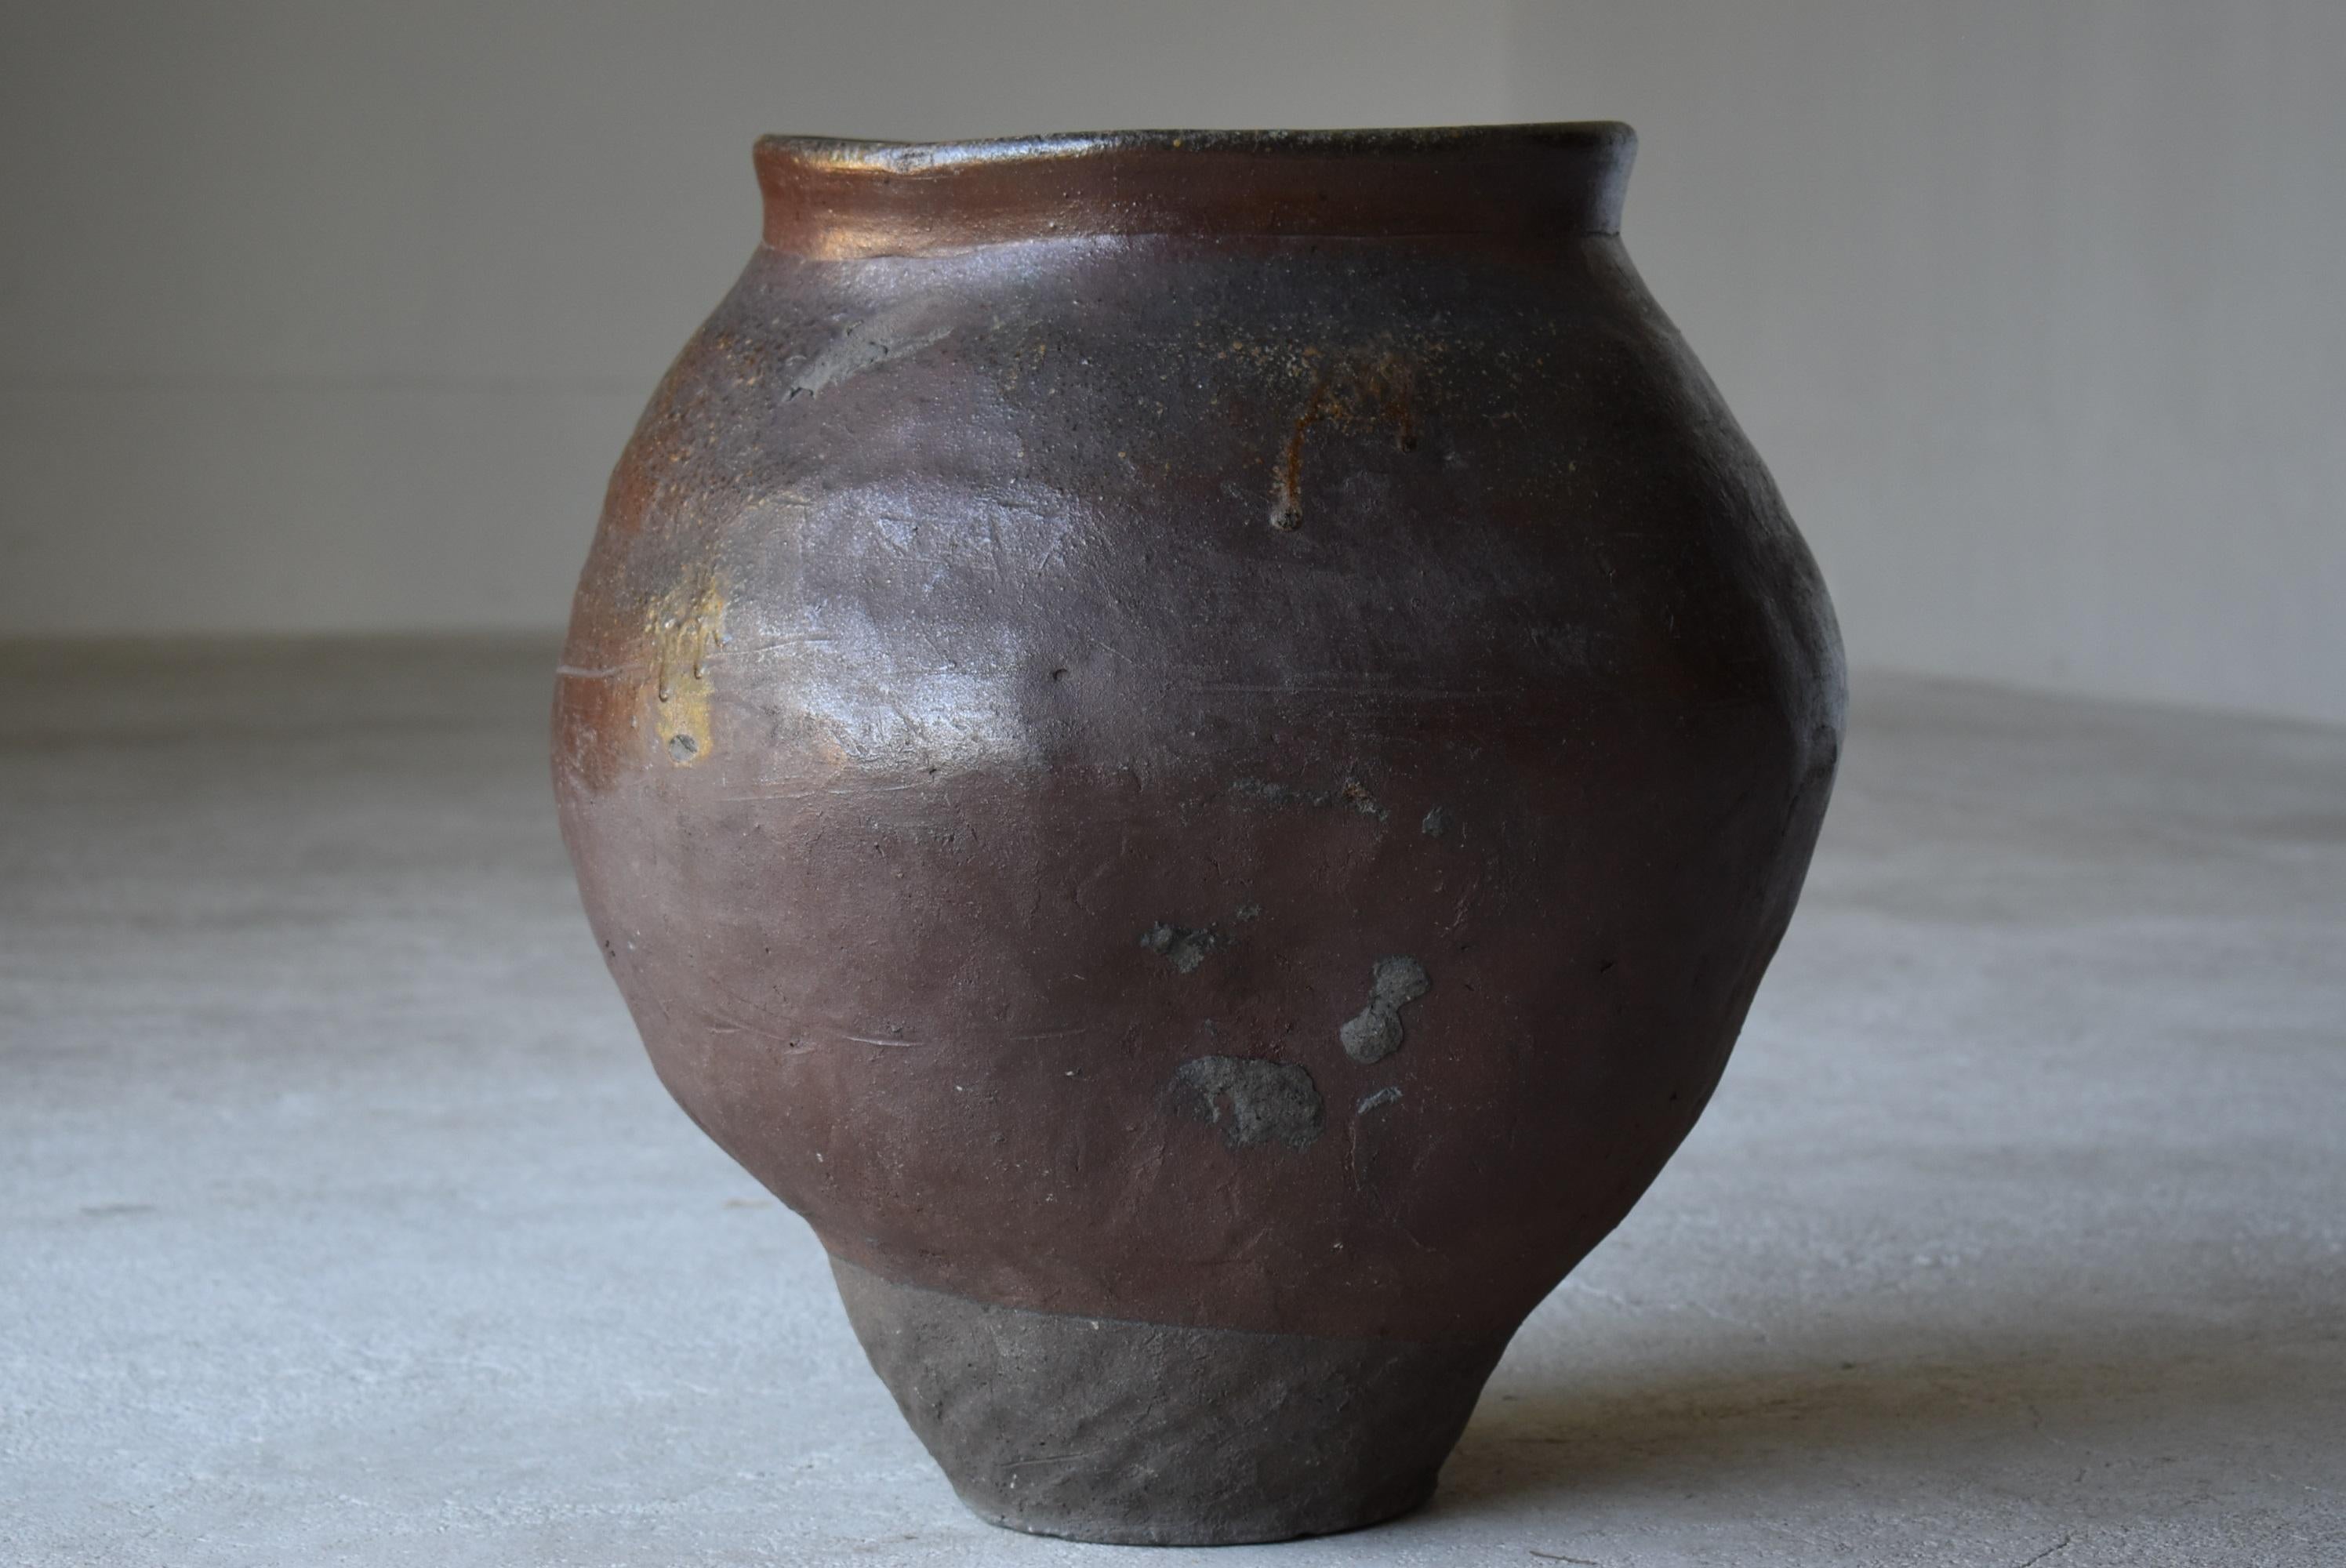 Japanese Old Pottery 1700s-1800s/Antique Flower Vase Vessel Jar Tsubo Wabisabi 3